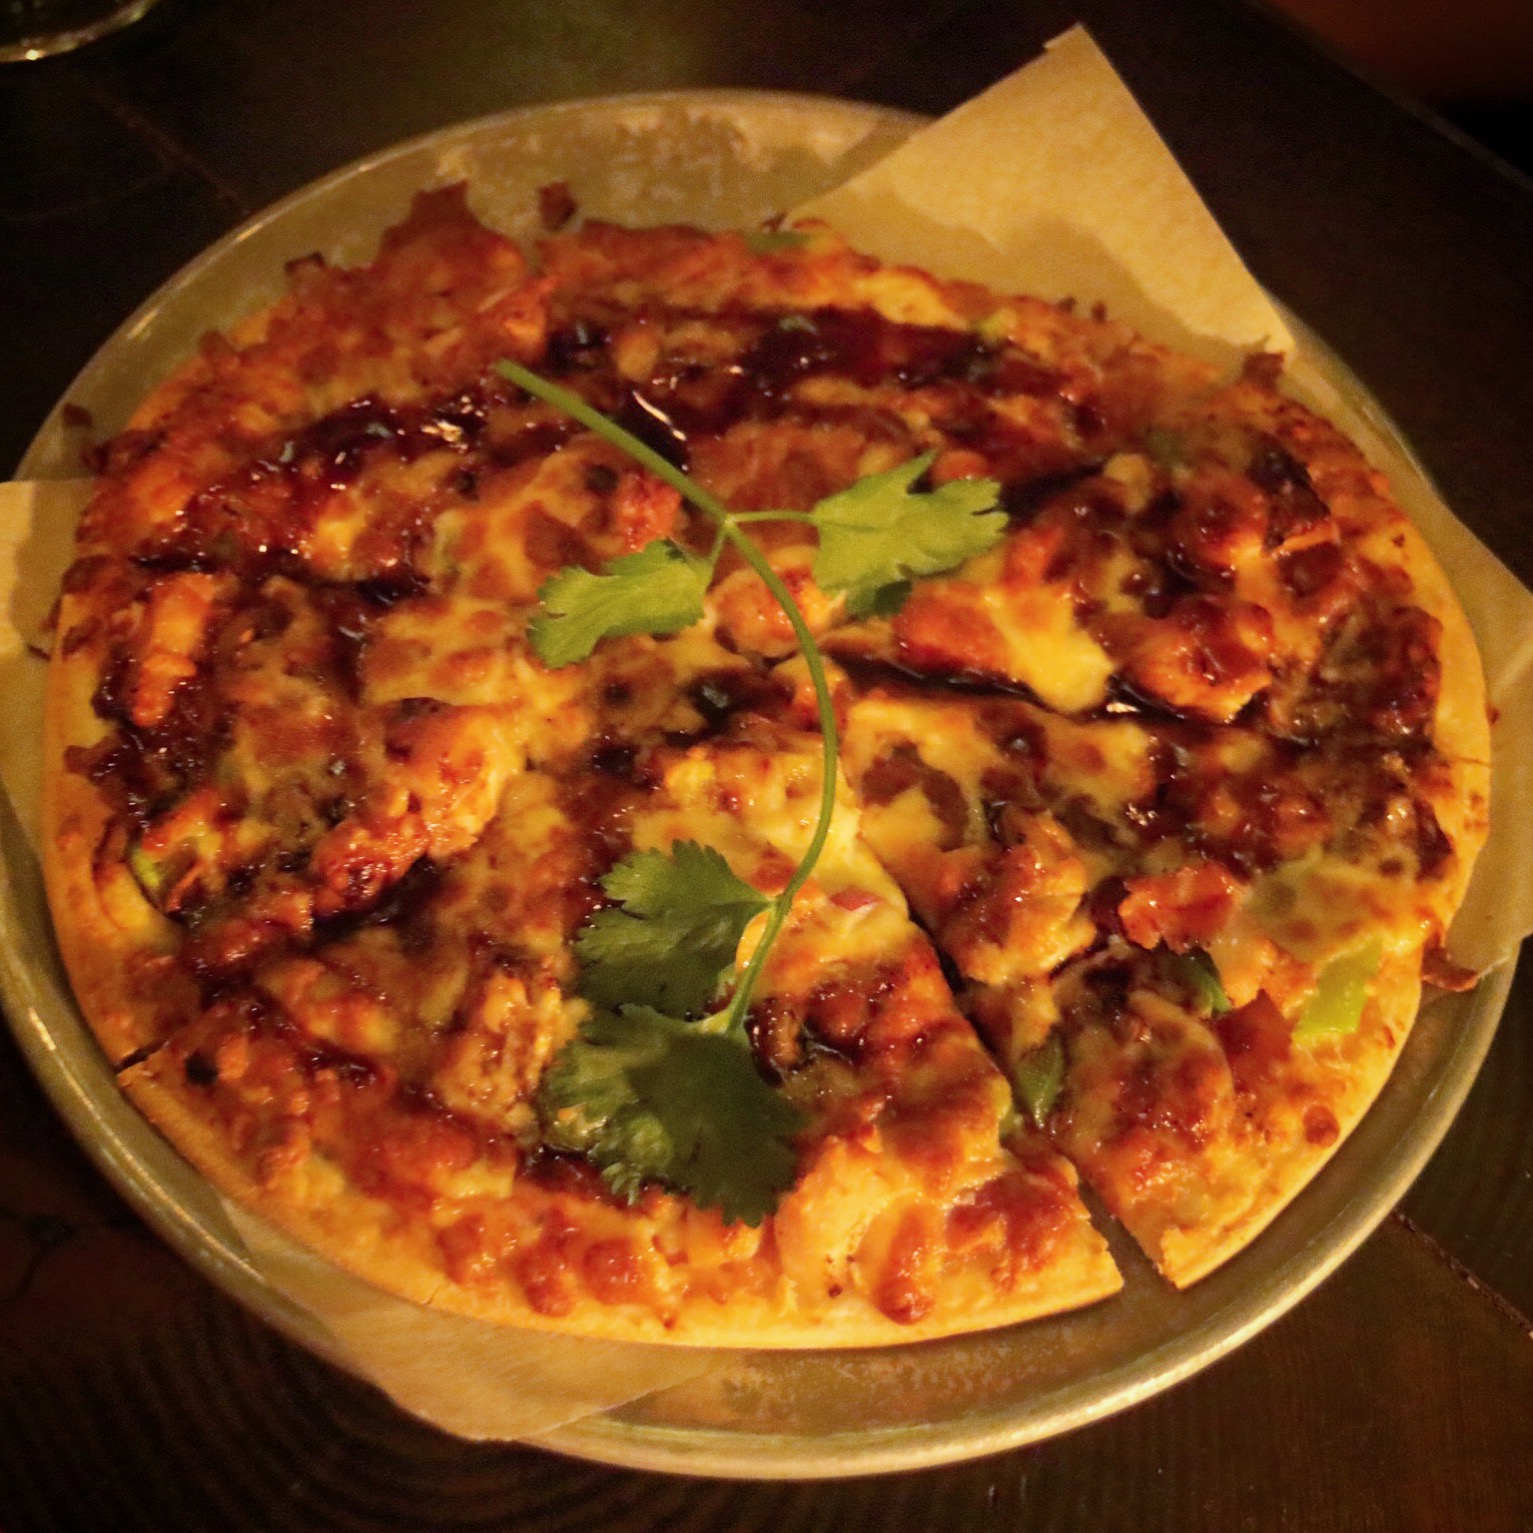  “Green onion pancake pizza”